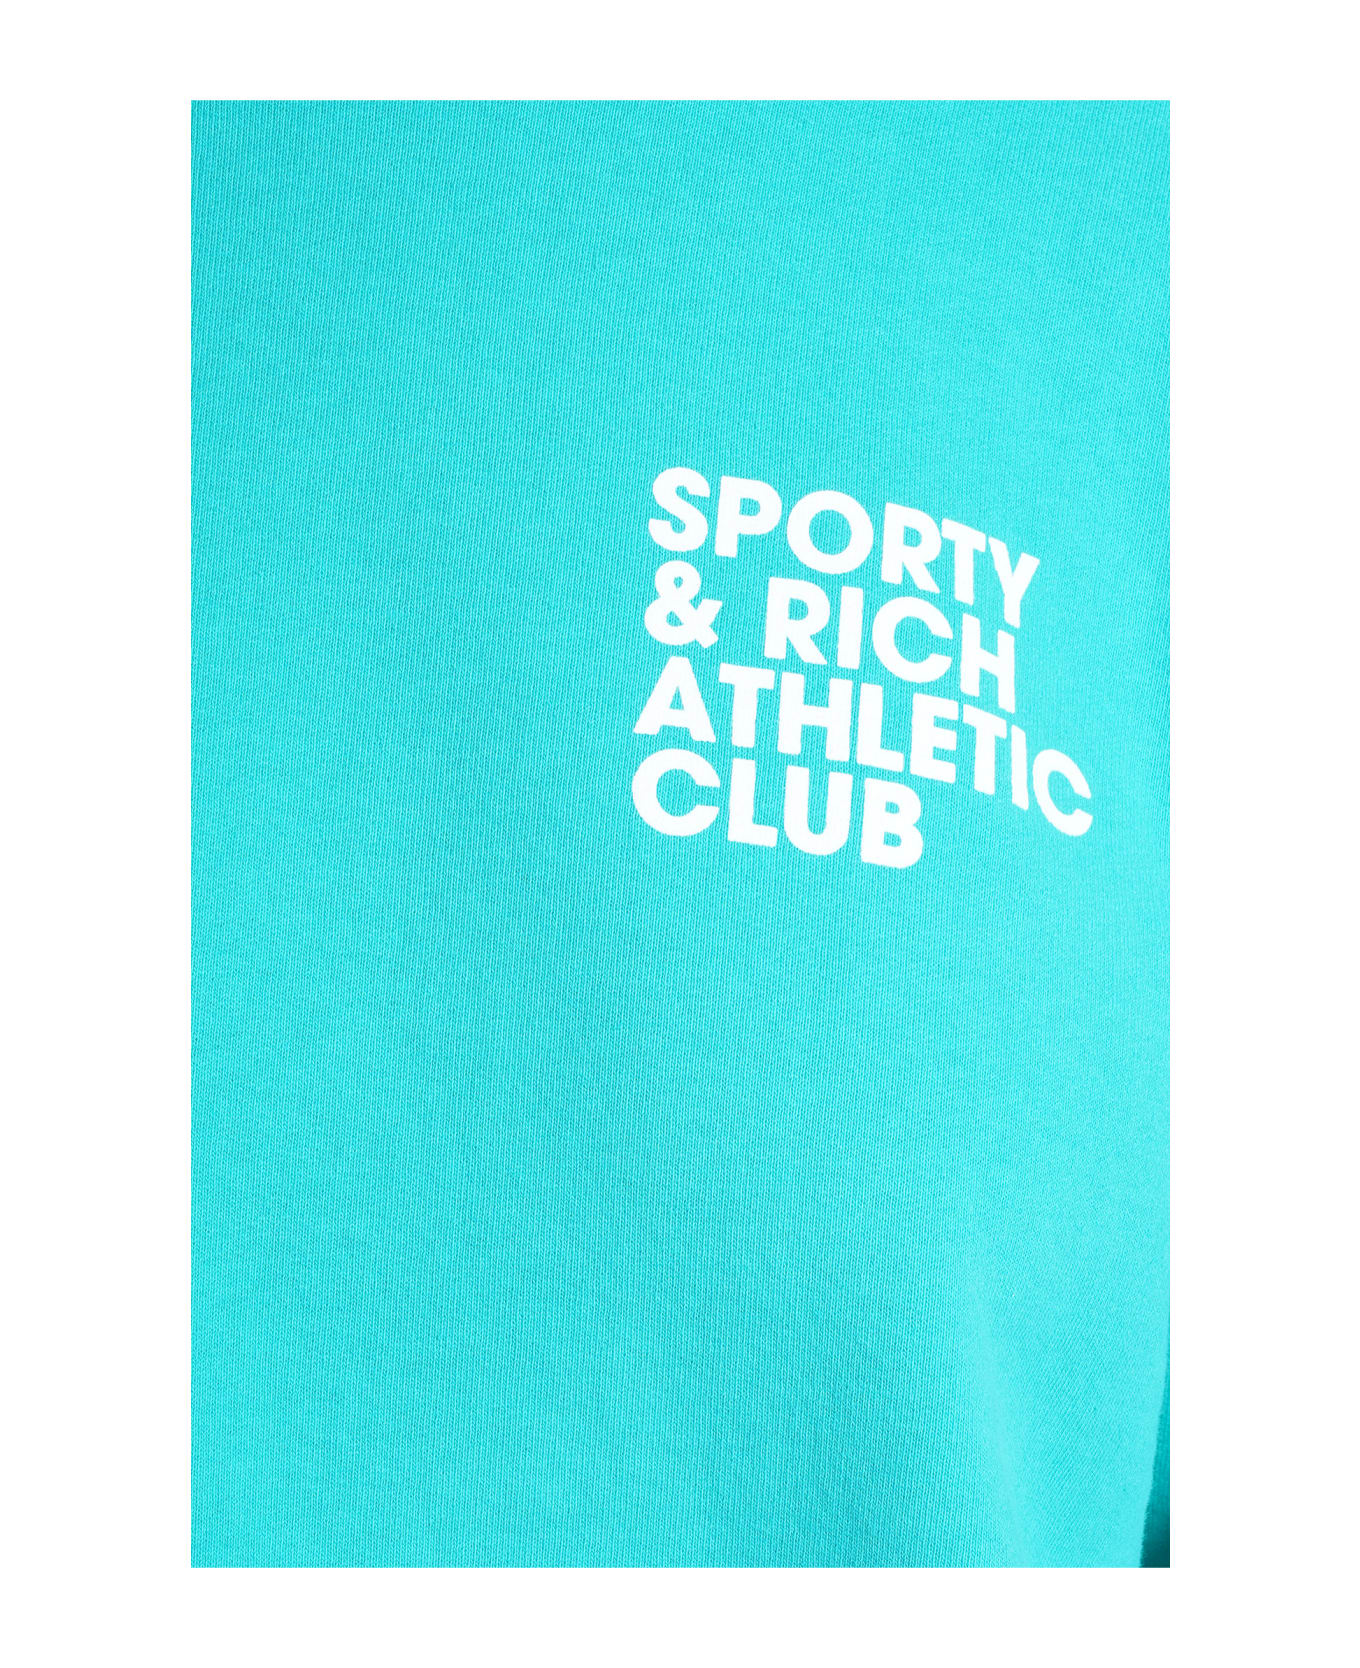 Sporty & Rich Sweatshirt In Cyan Cotton - cyan